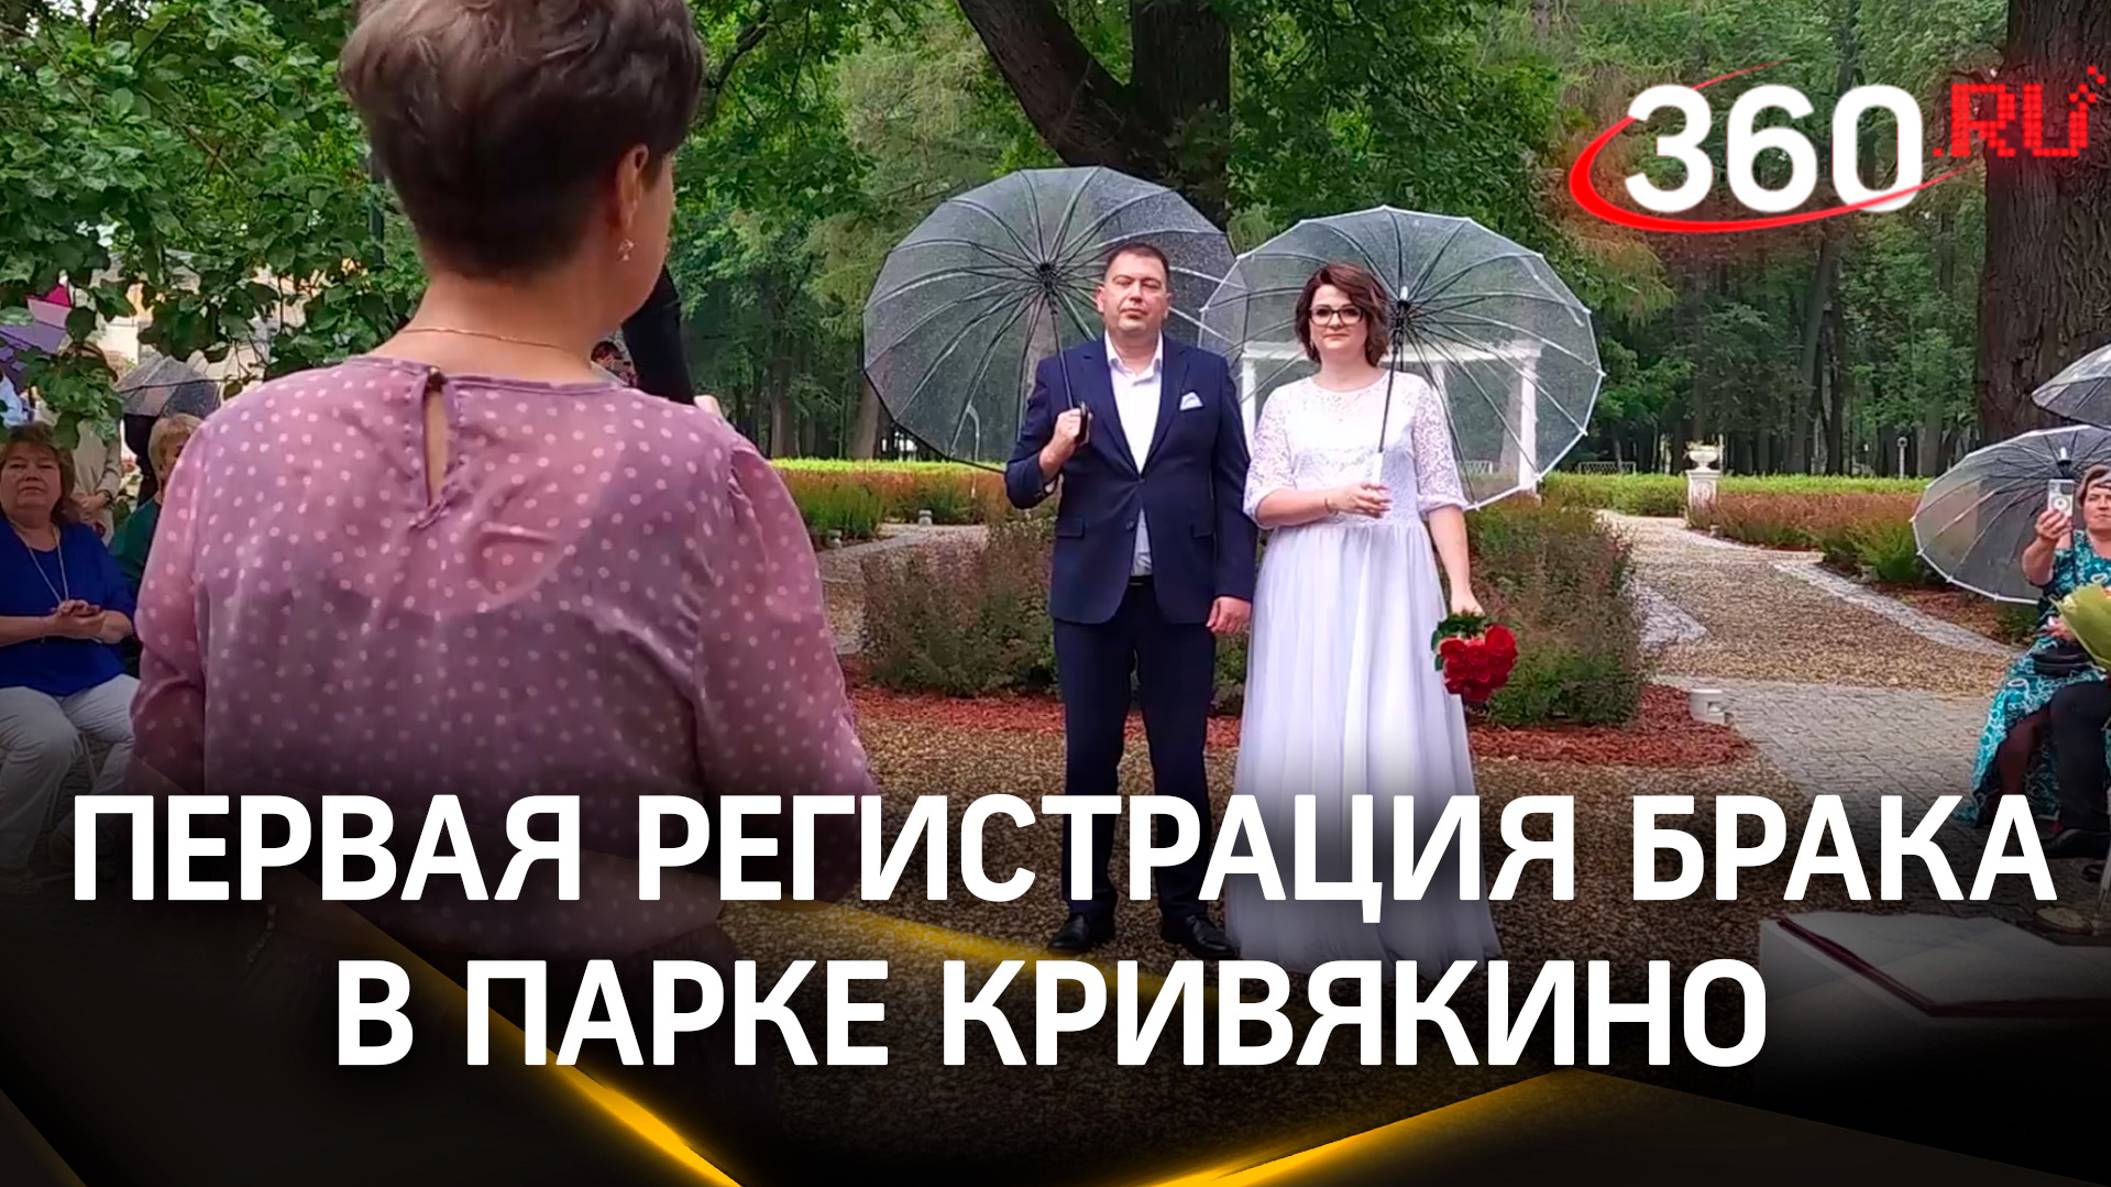 Первая регистрация брака прошла в подмосковном парке Кривякино